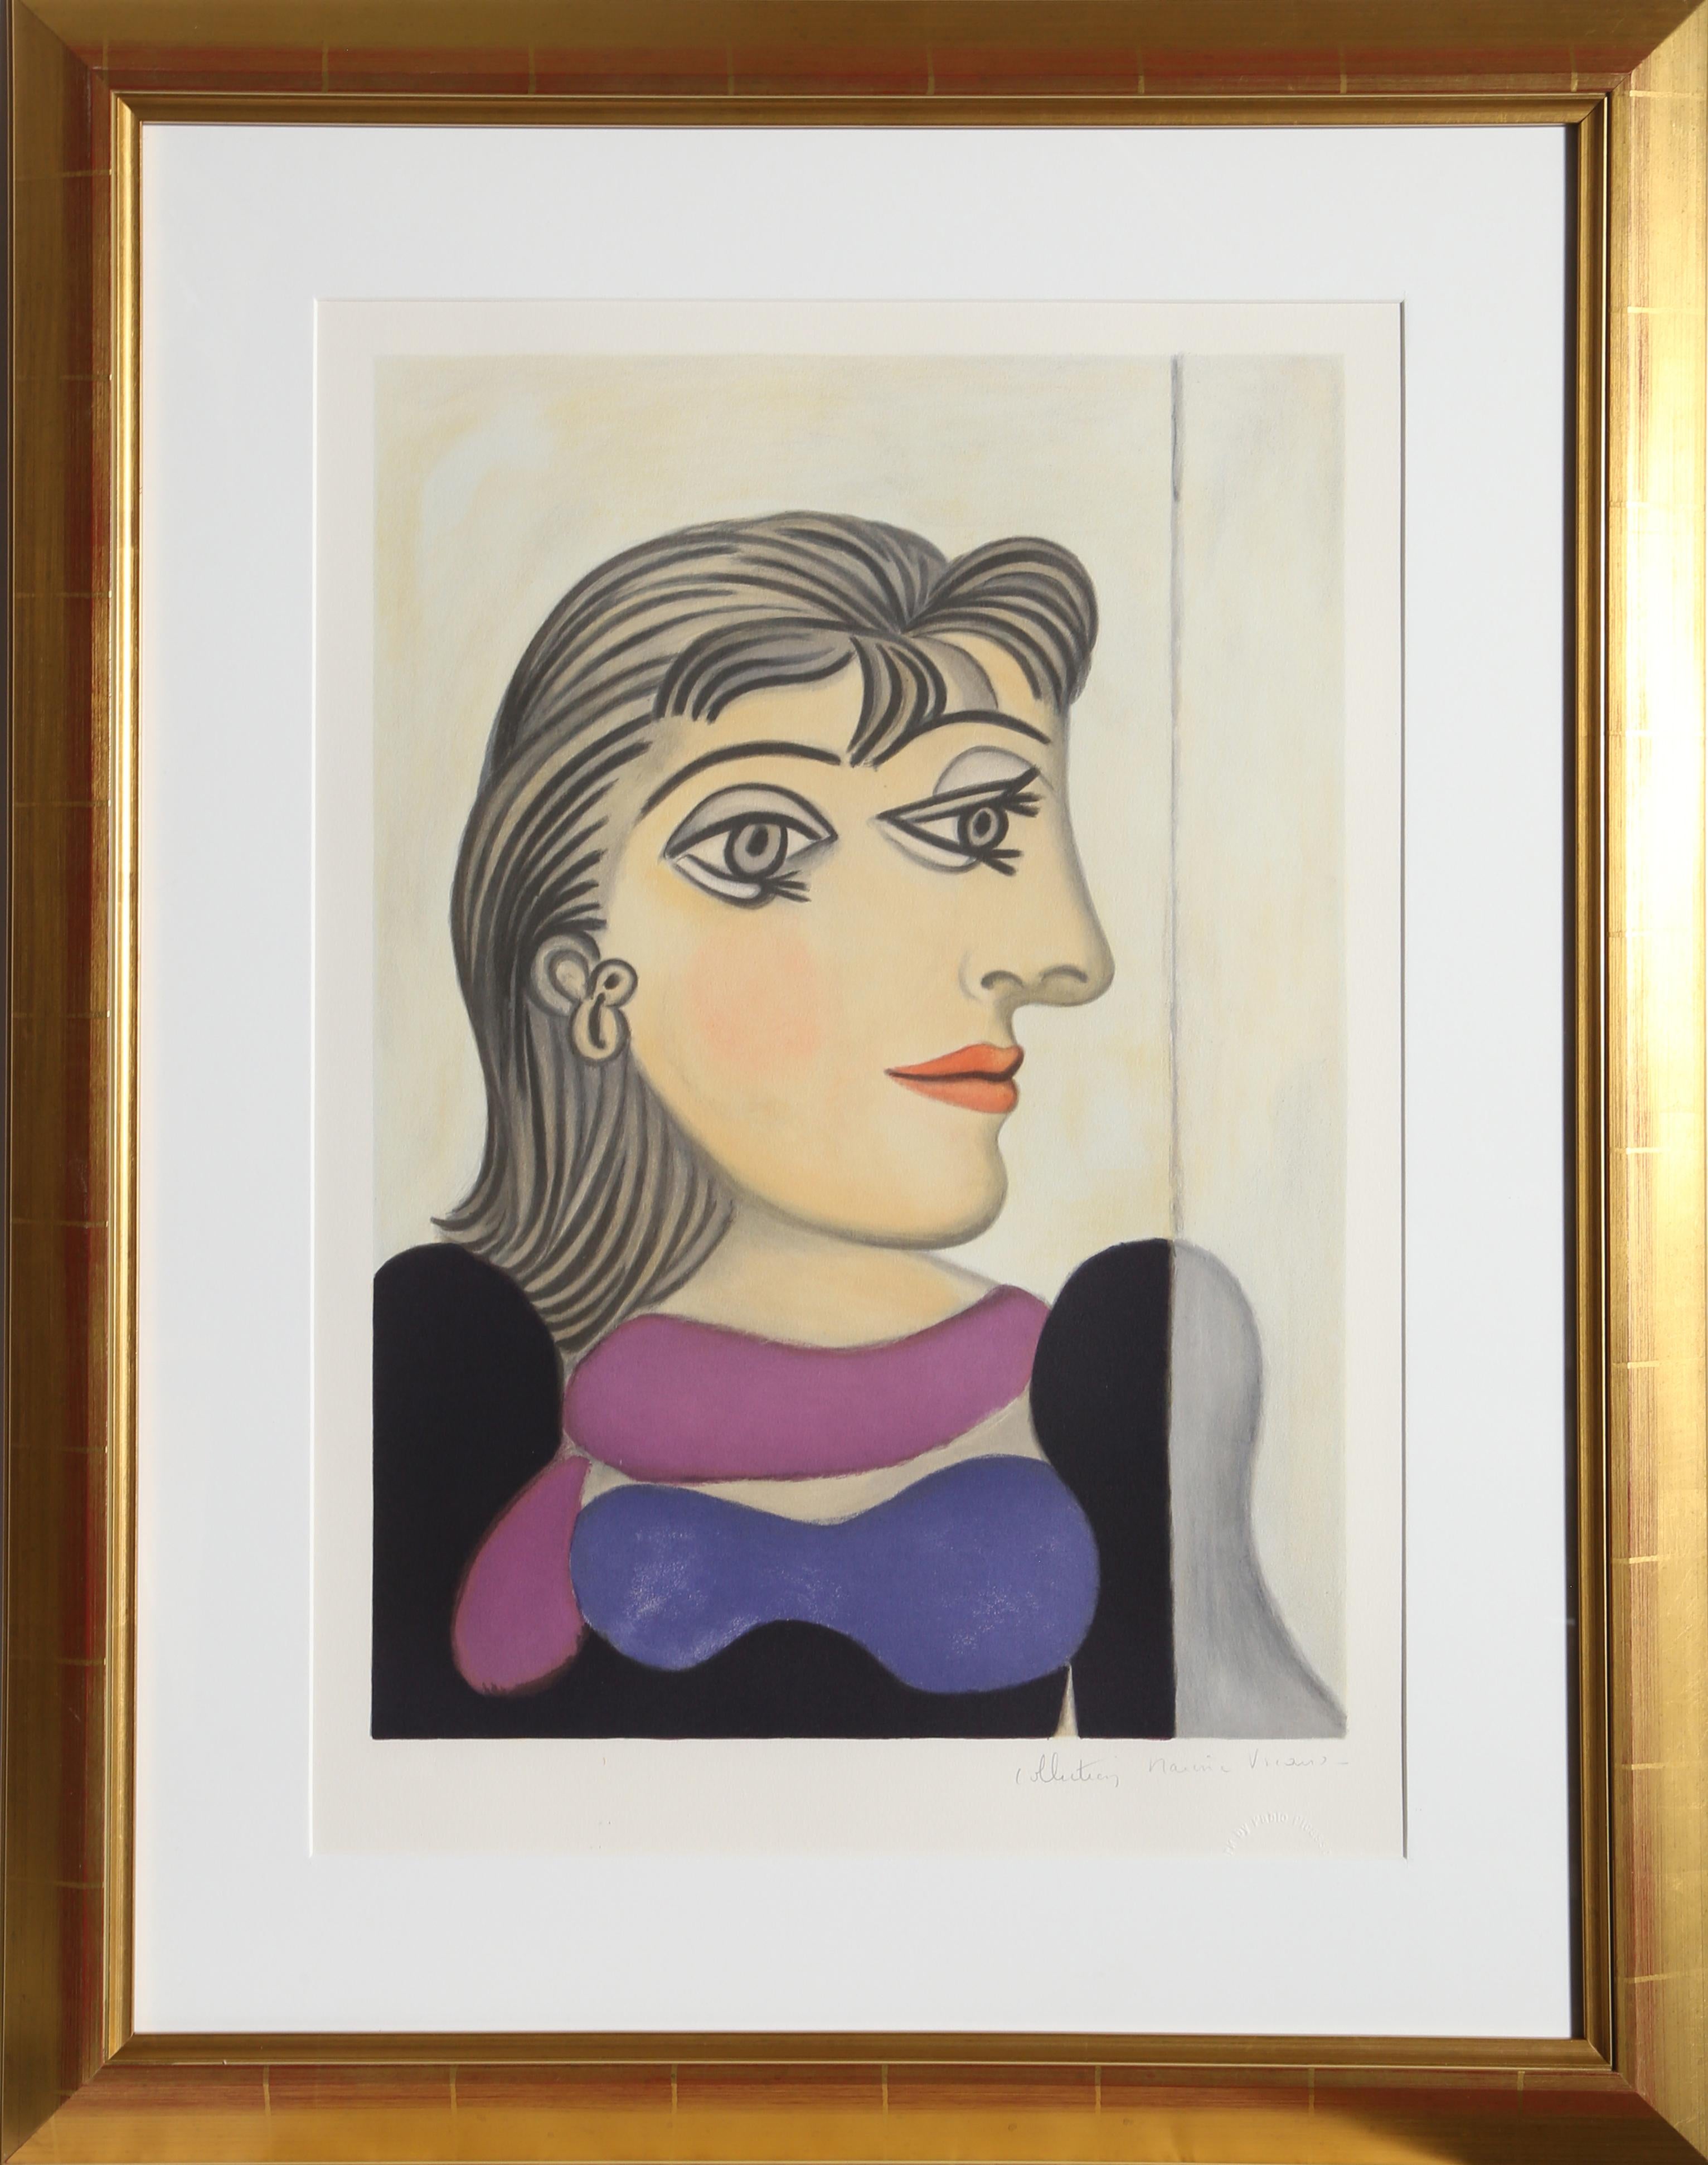 Eine Lithographie aus der Nachlasssammlung Marina Picasso nach dem Gemälde "Buste de Femme Au Foulard Mauve" von Pablo Picasso. Das Originalgemälde wurde 1937 fertiggestellt. In den 1970er Jahren, nach Picassos Tod, autorisierte Marina Picasso,